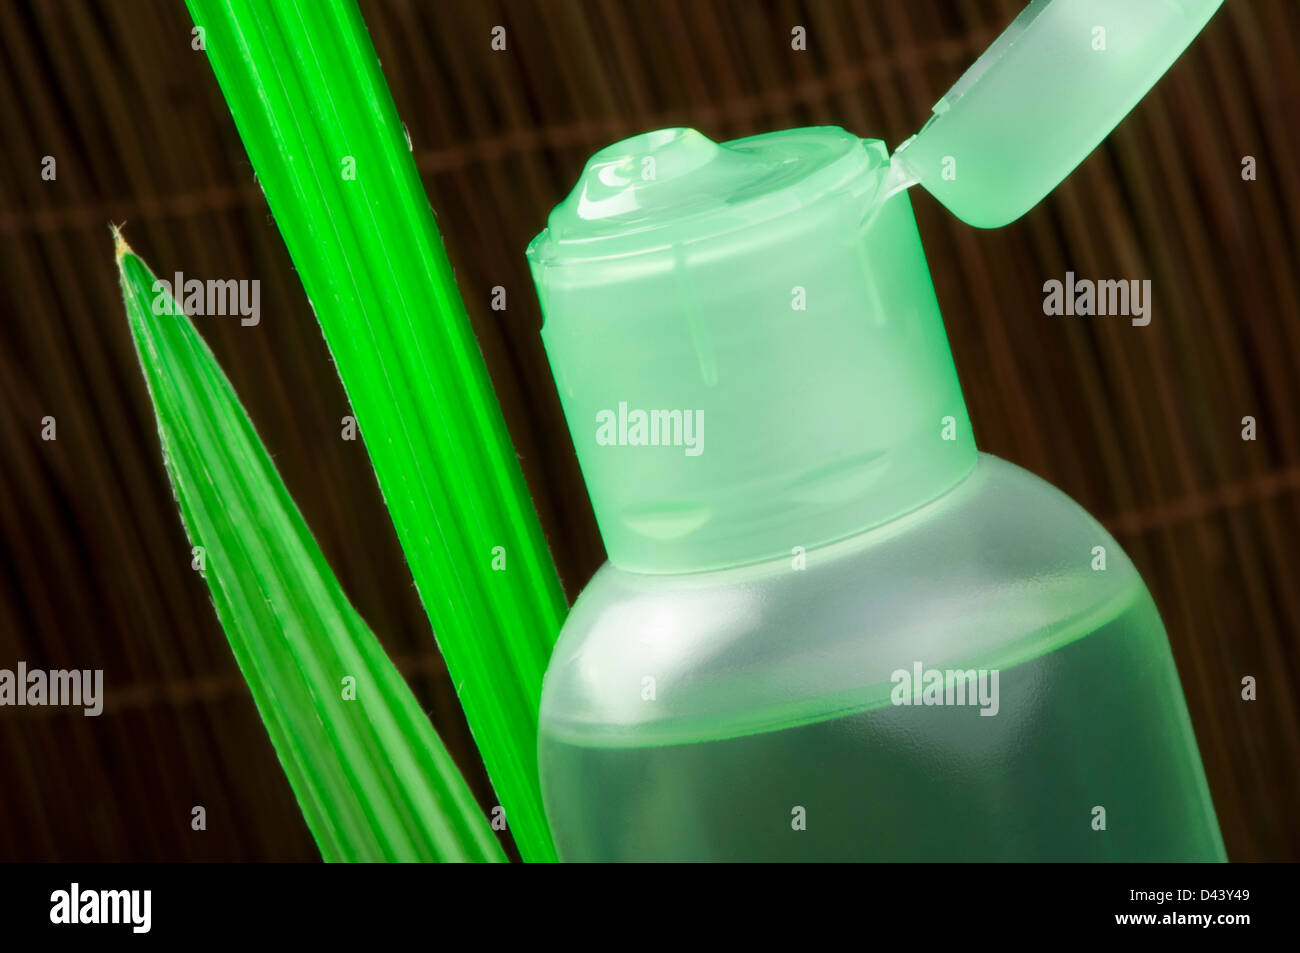 Cosmétique vert bouteille et vert feuille. Studio shot Banque D'Images